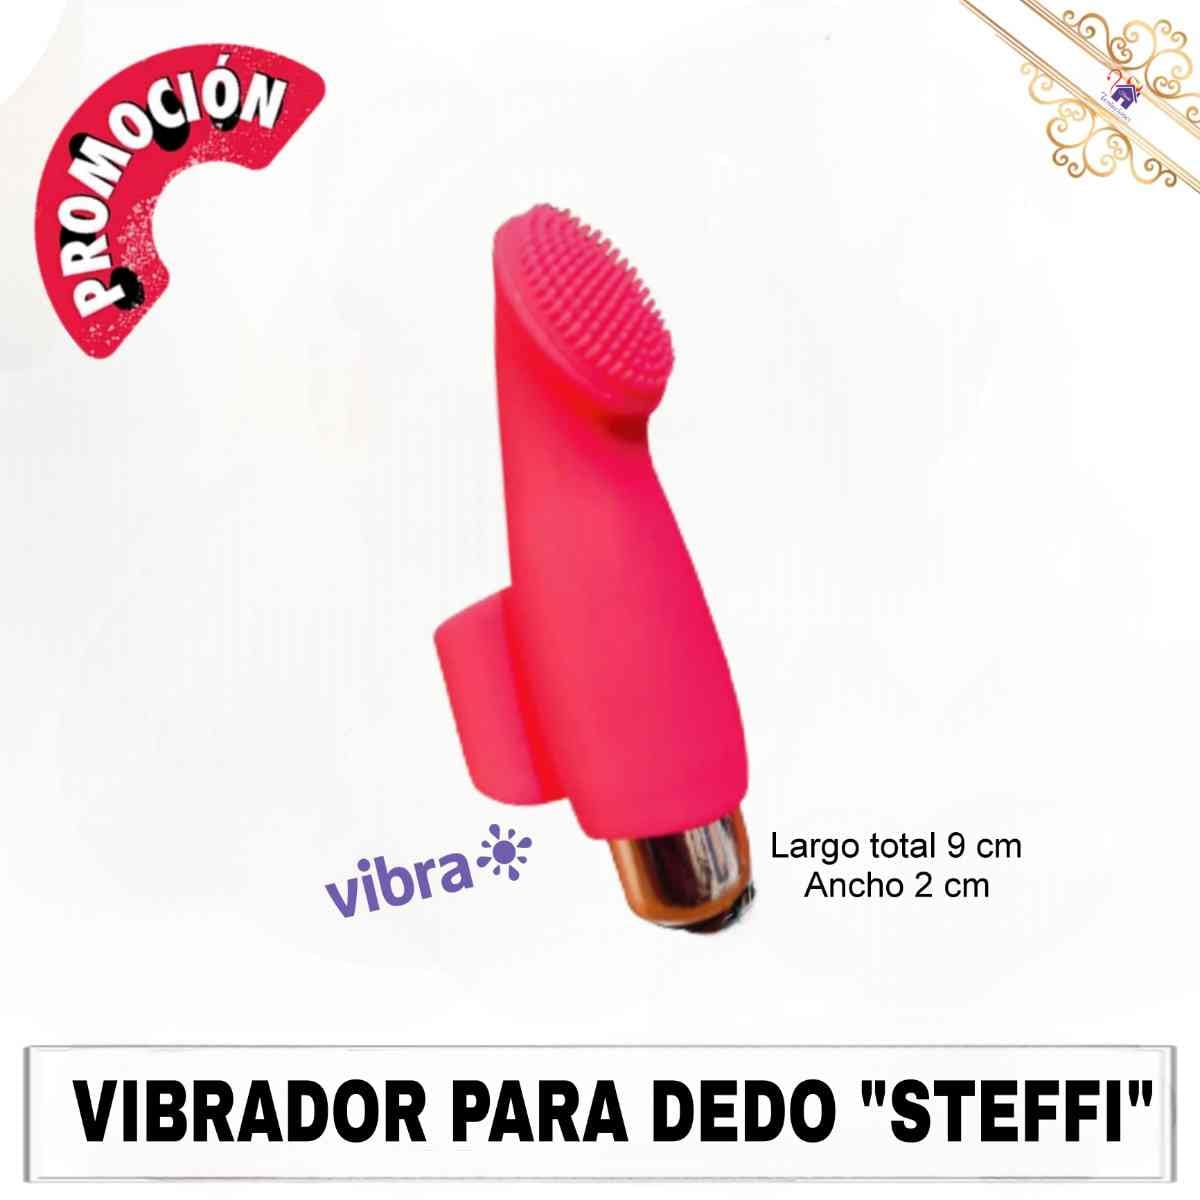 Vibrador Dedo Steffi-Tienda Tentaciones-Sex Shop Ecuador